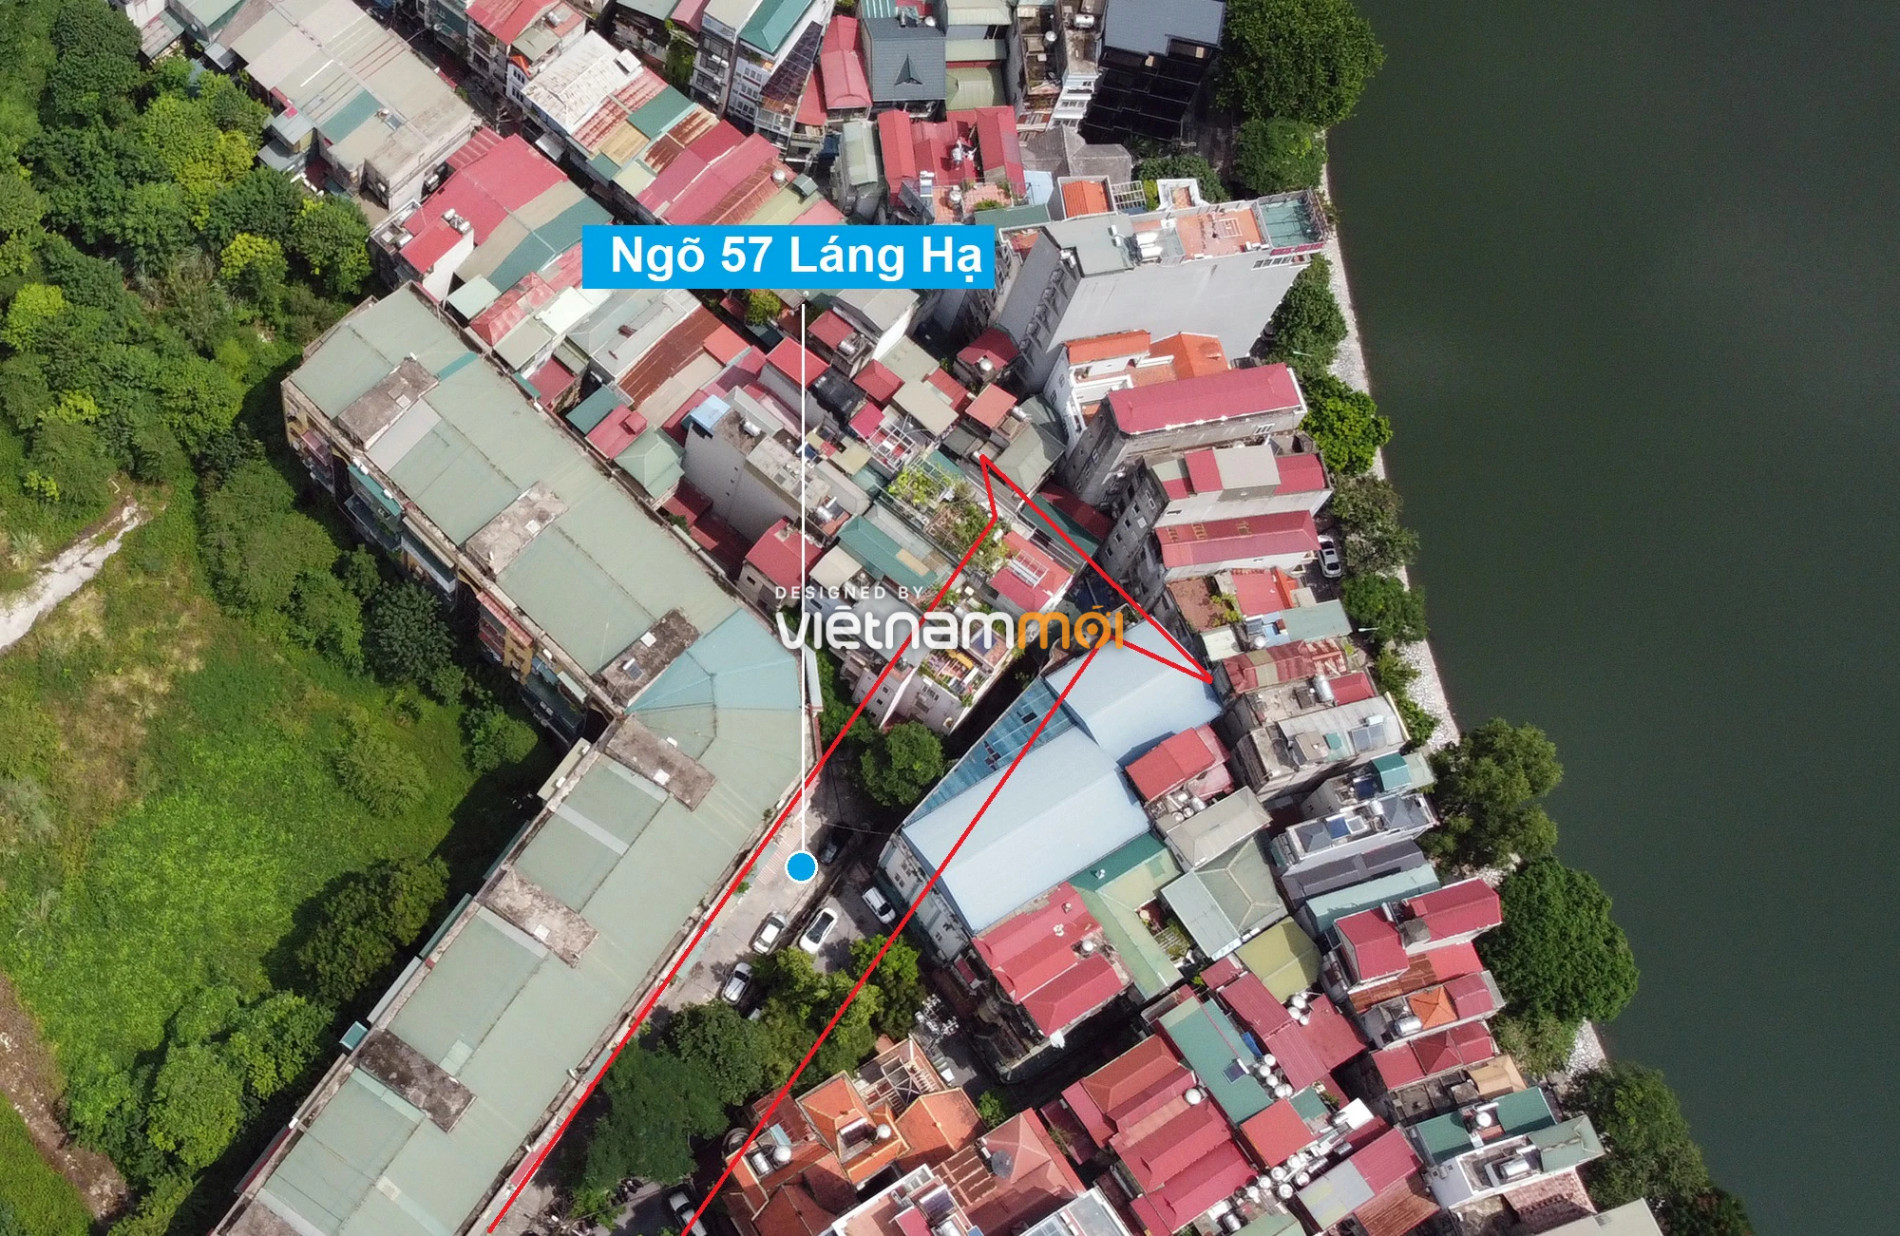 Những khu đất sắp thu hồi để mở đường ở quận Đống Đa, Hà Nội (phần 3) - Ảnh 5.